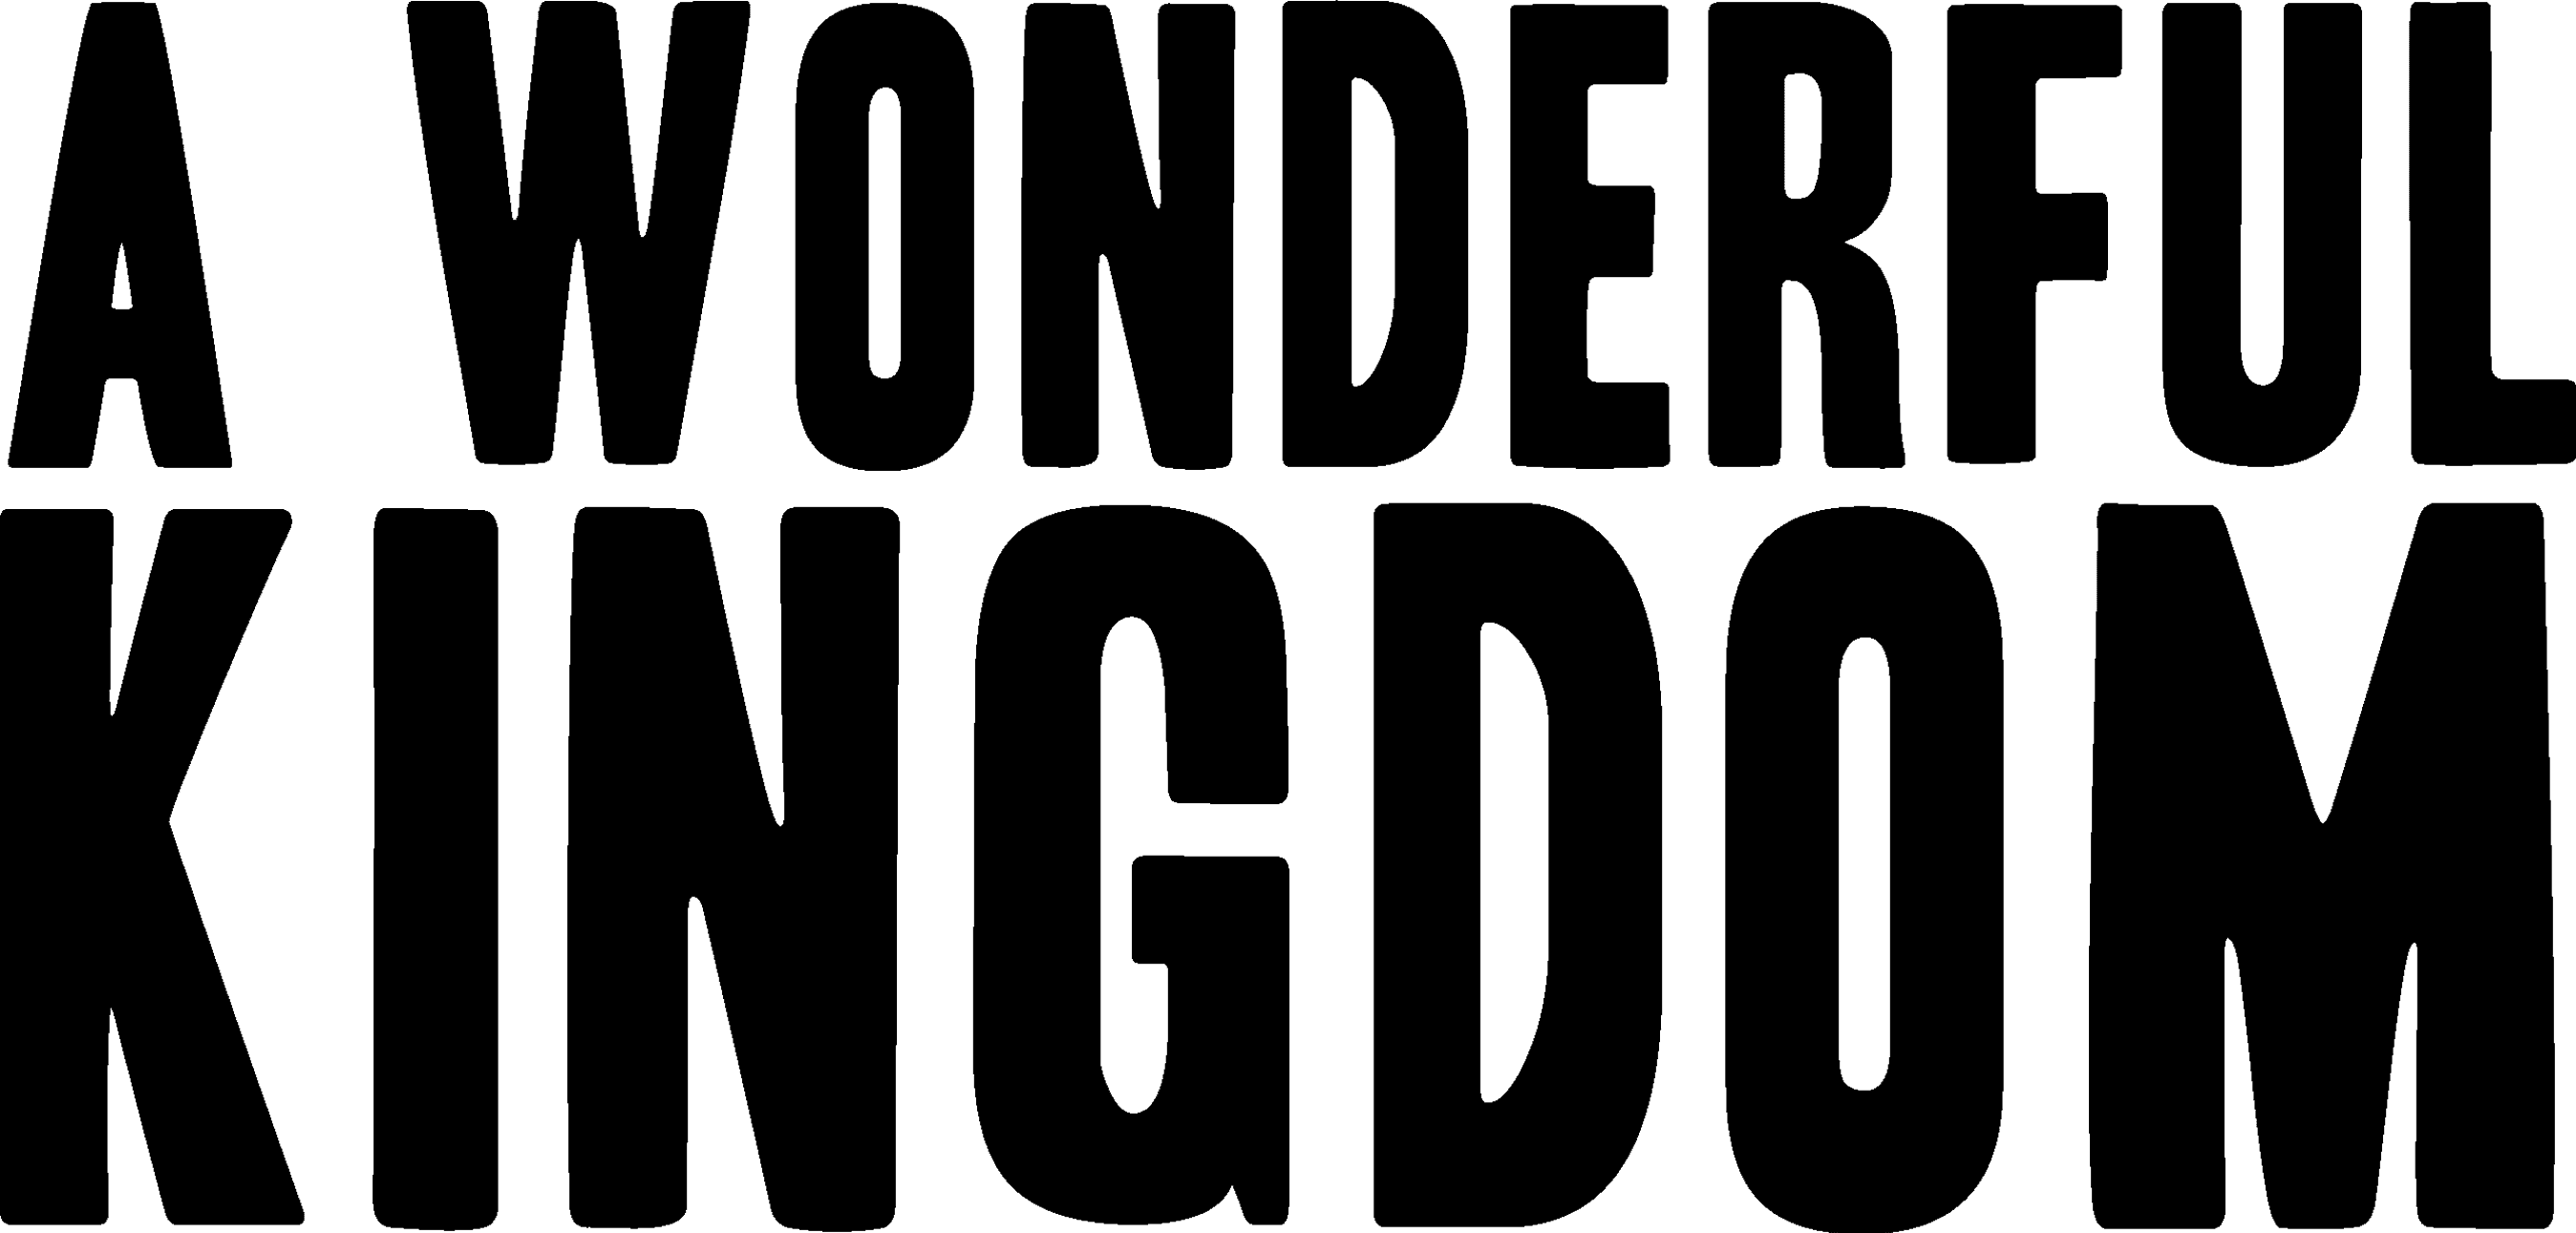 A Wonderful Kingdom logo